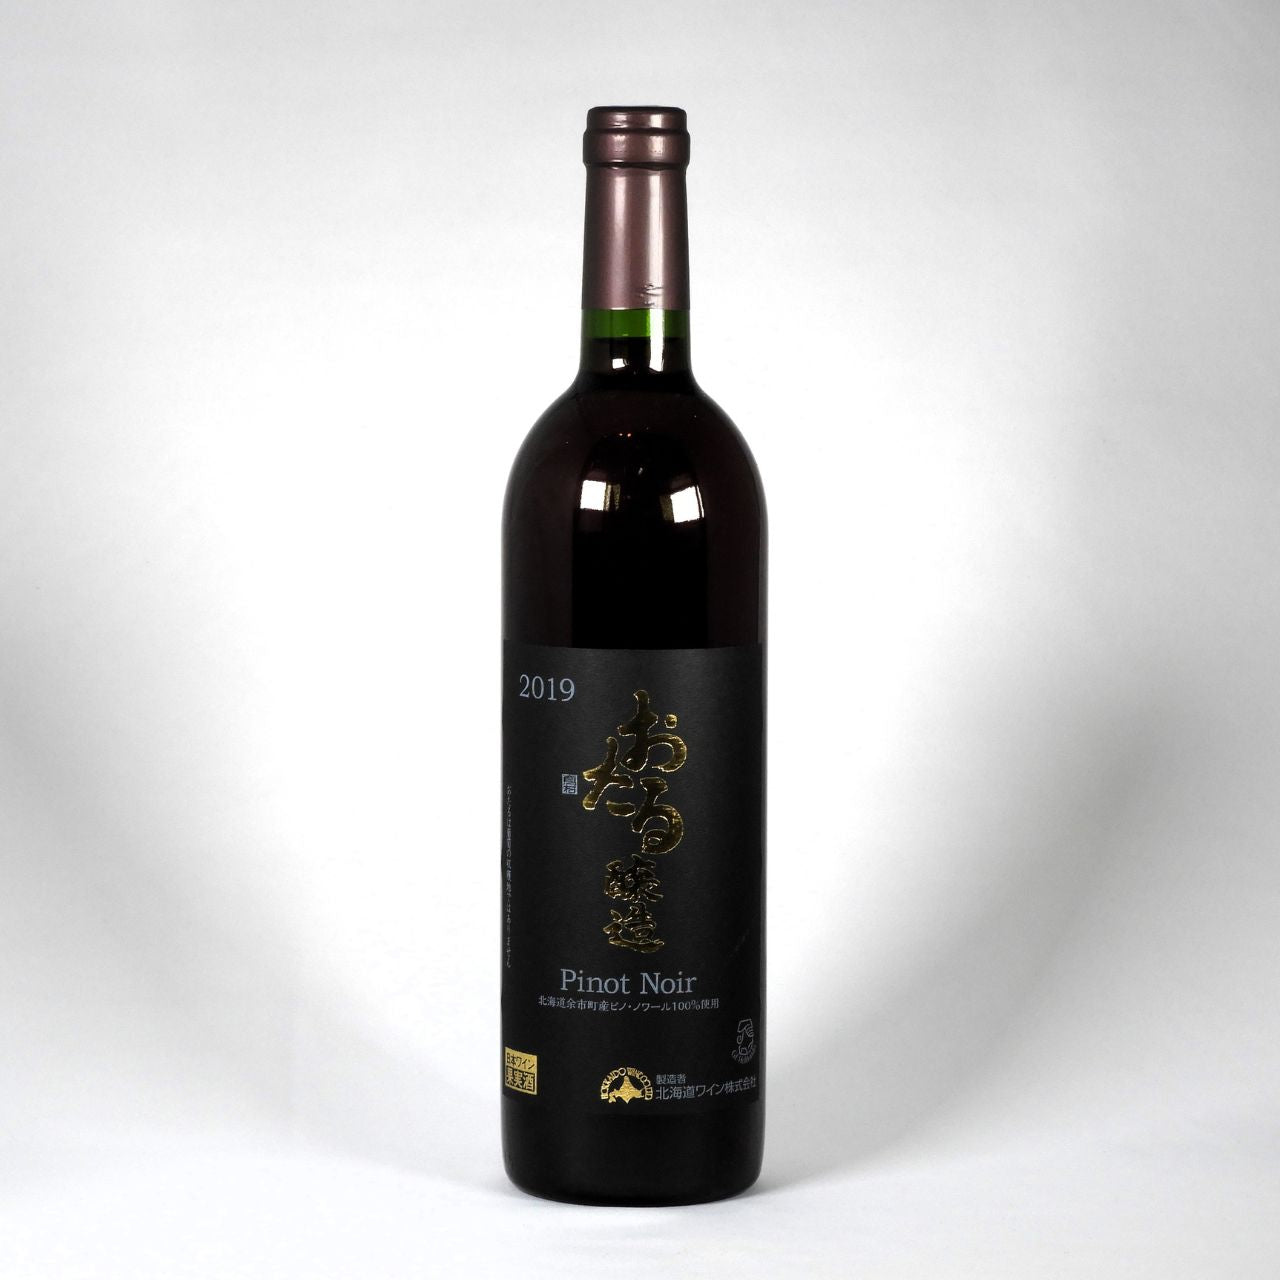 ド・モンティーユ\u0026北海道 2019 日本ワイン 稀少 今月内で終了稀少レア貴重